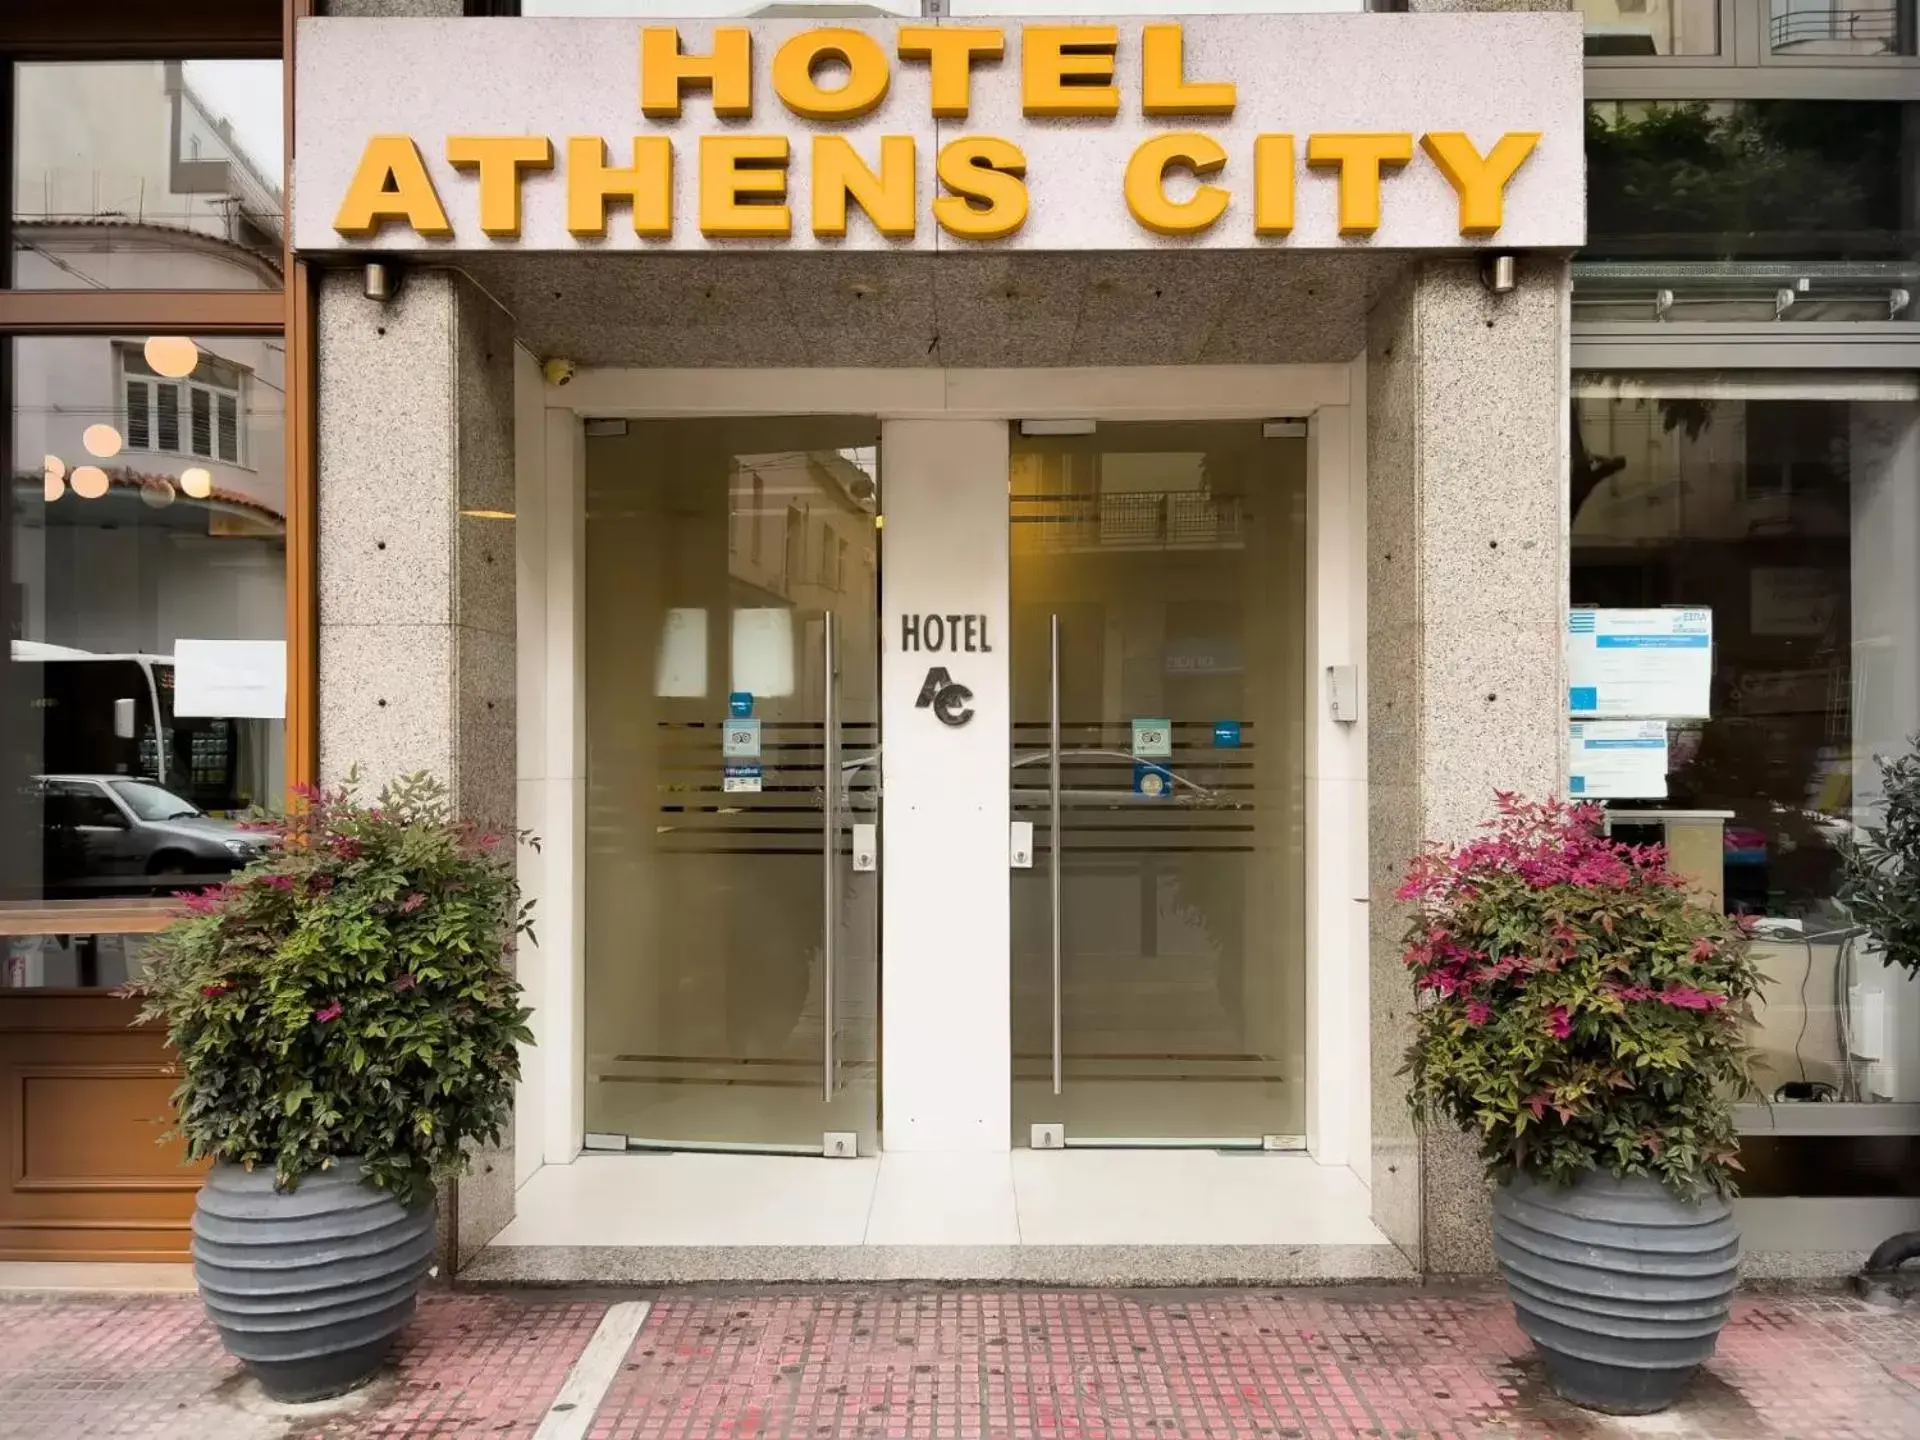 Facade/entrance in Athens City Hotel